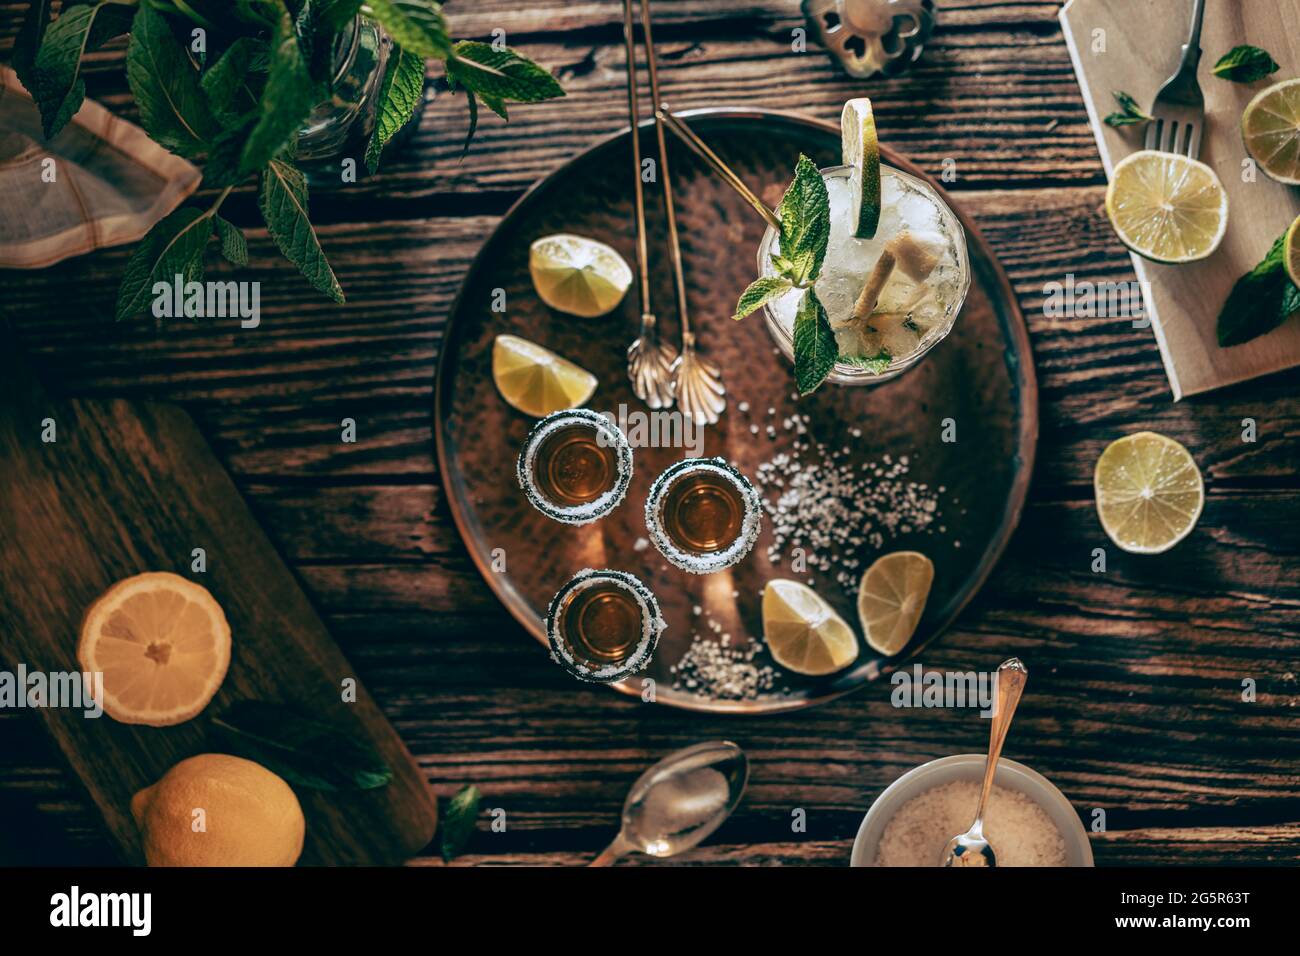 Fotografia piatta di una bevanda fredda, un bicchiere di mojito con foglie di menta, ghiaccio, limone e zucchero con colpi di tequila su un tavolo di legno Foto Stock